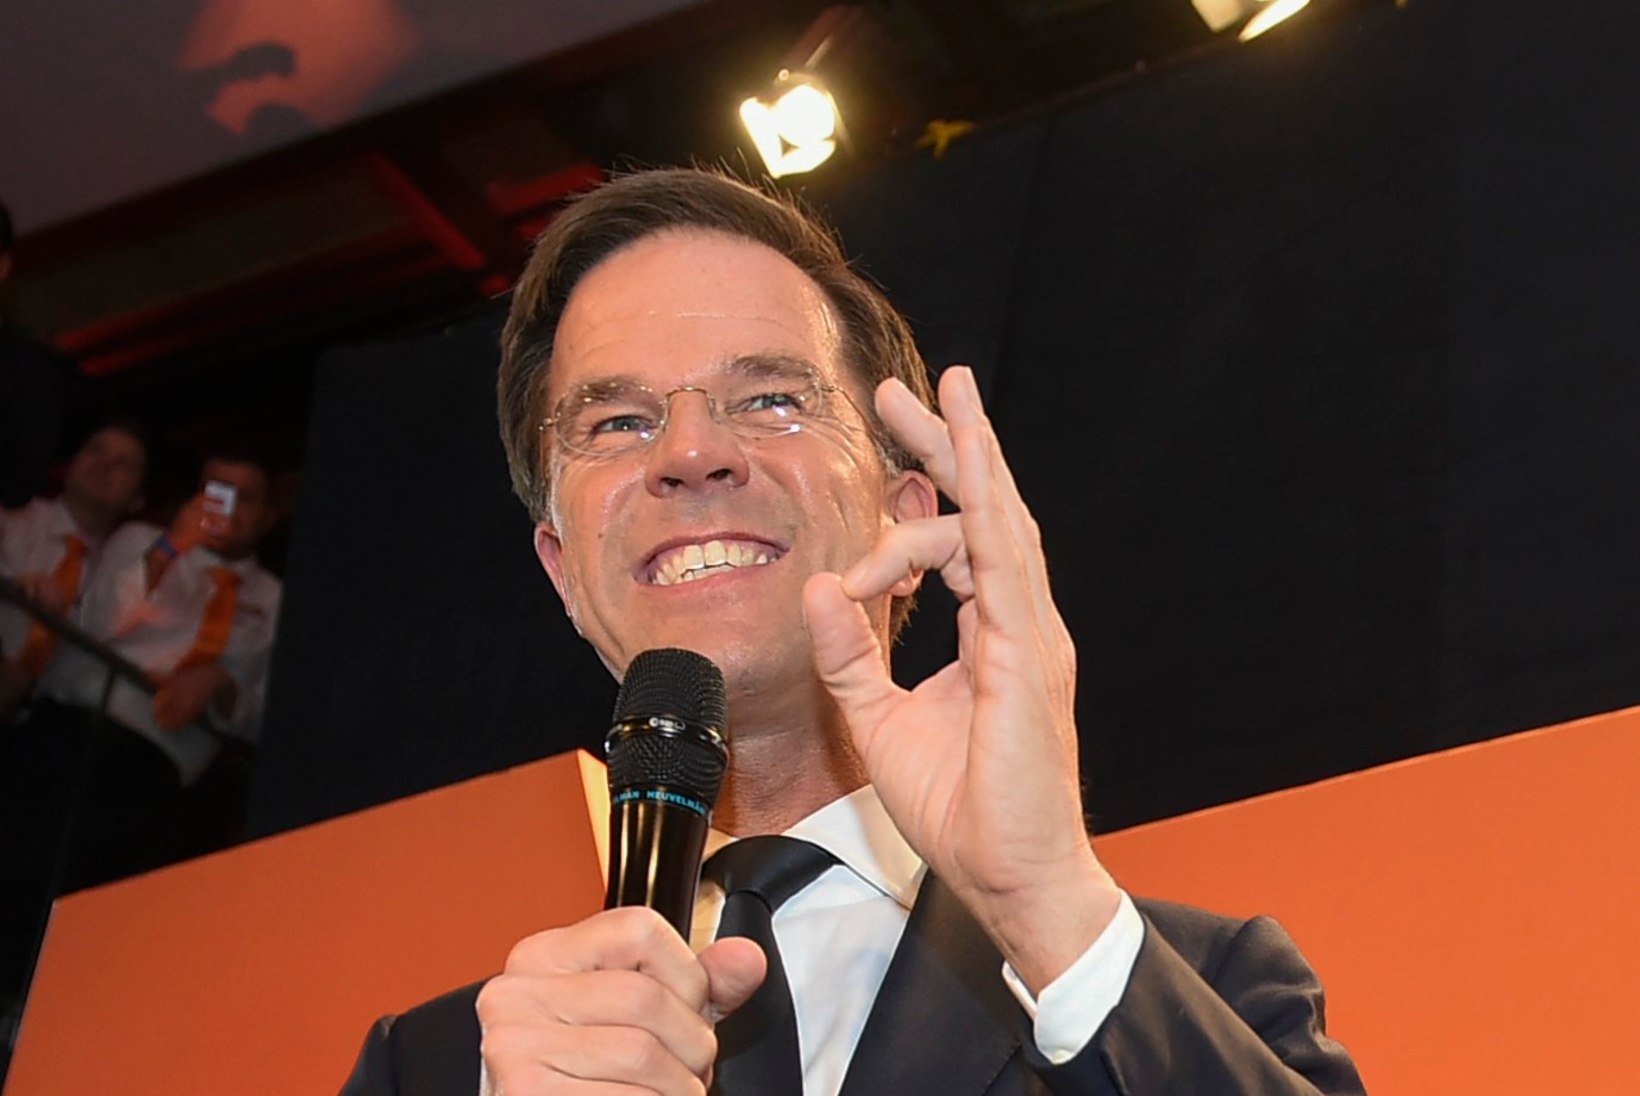 Hollandi valimised võitis valitseva peaministri erakond